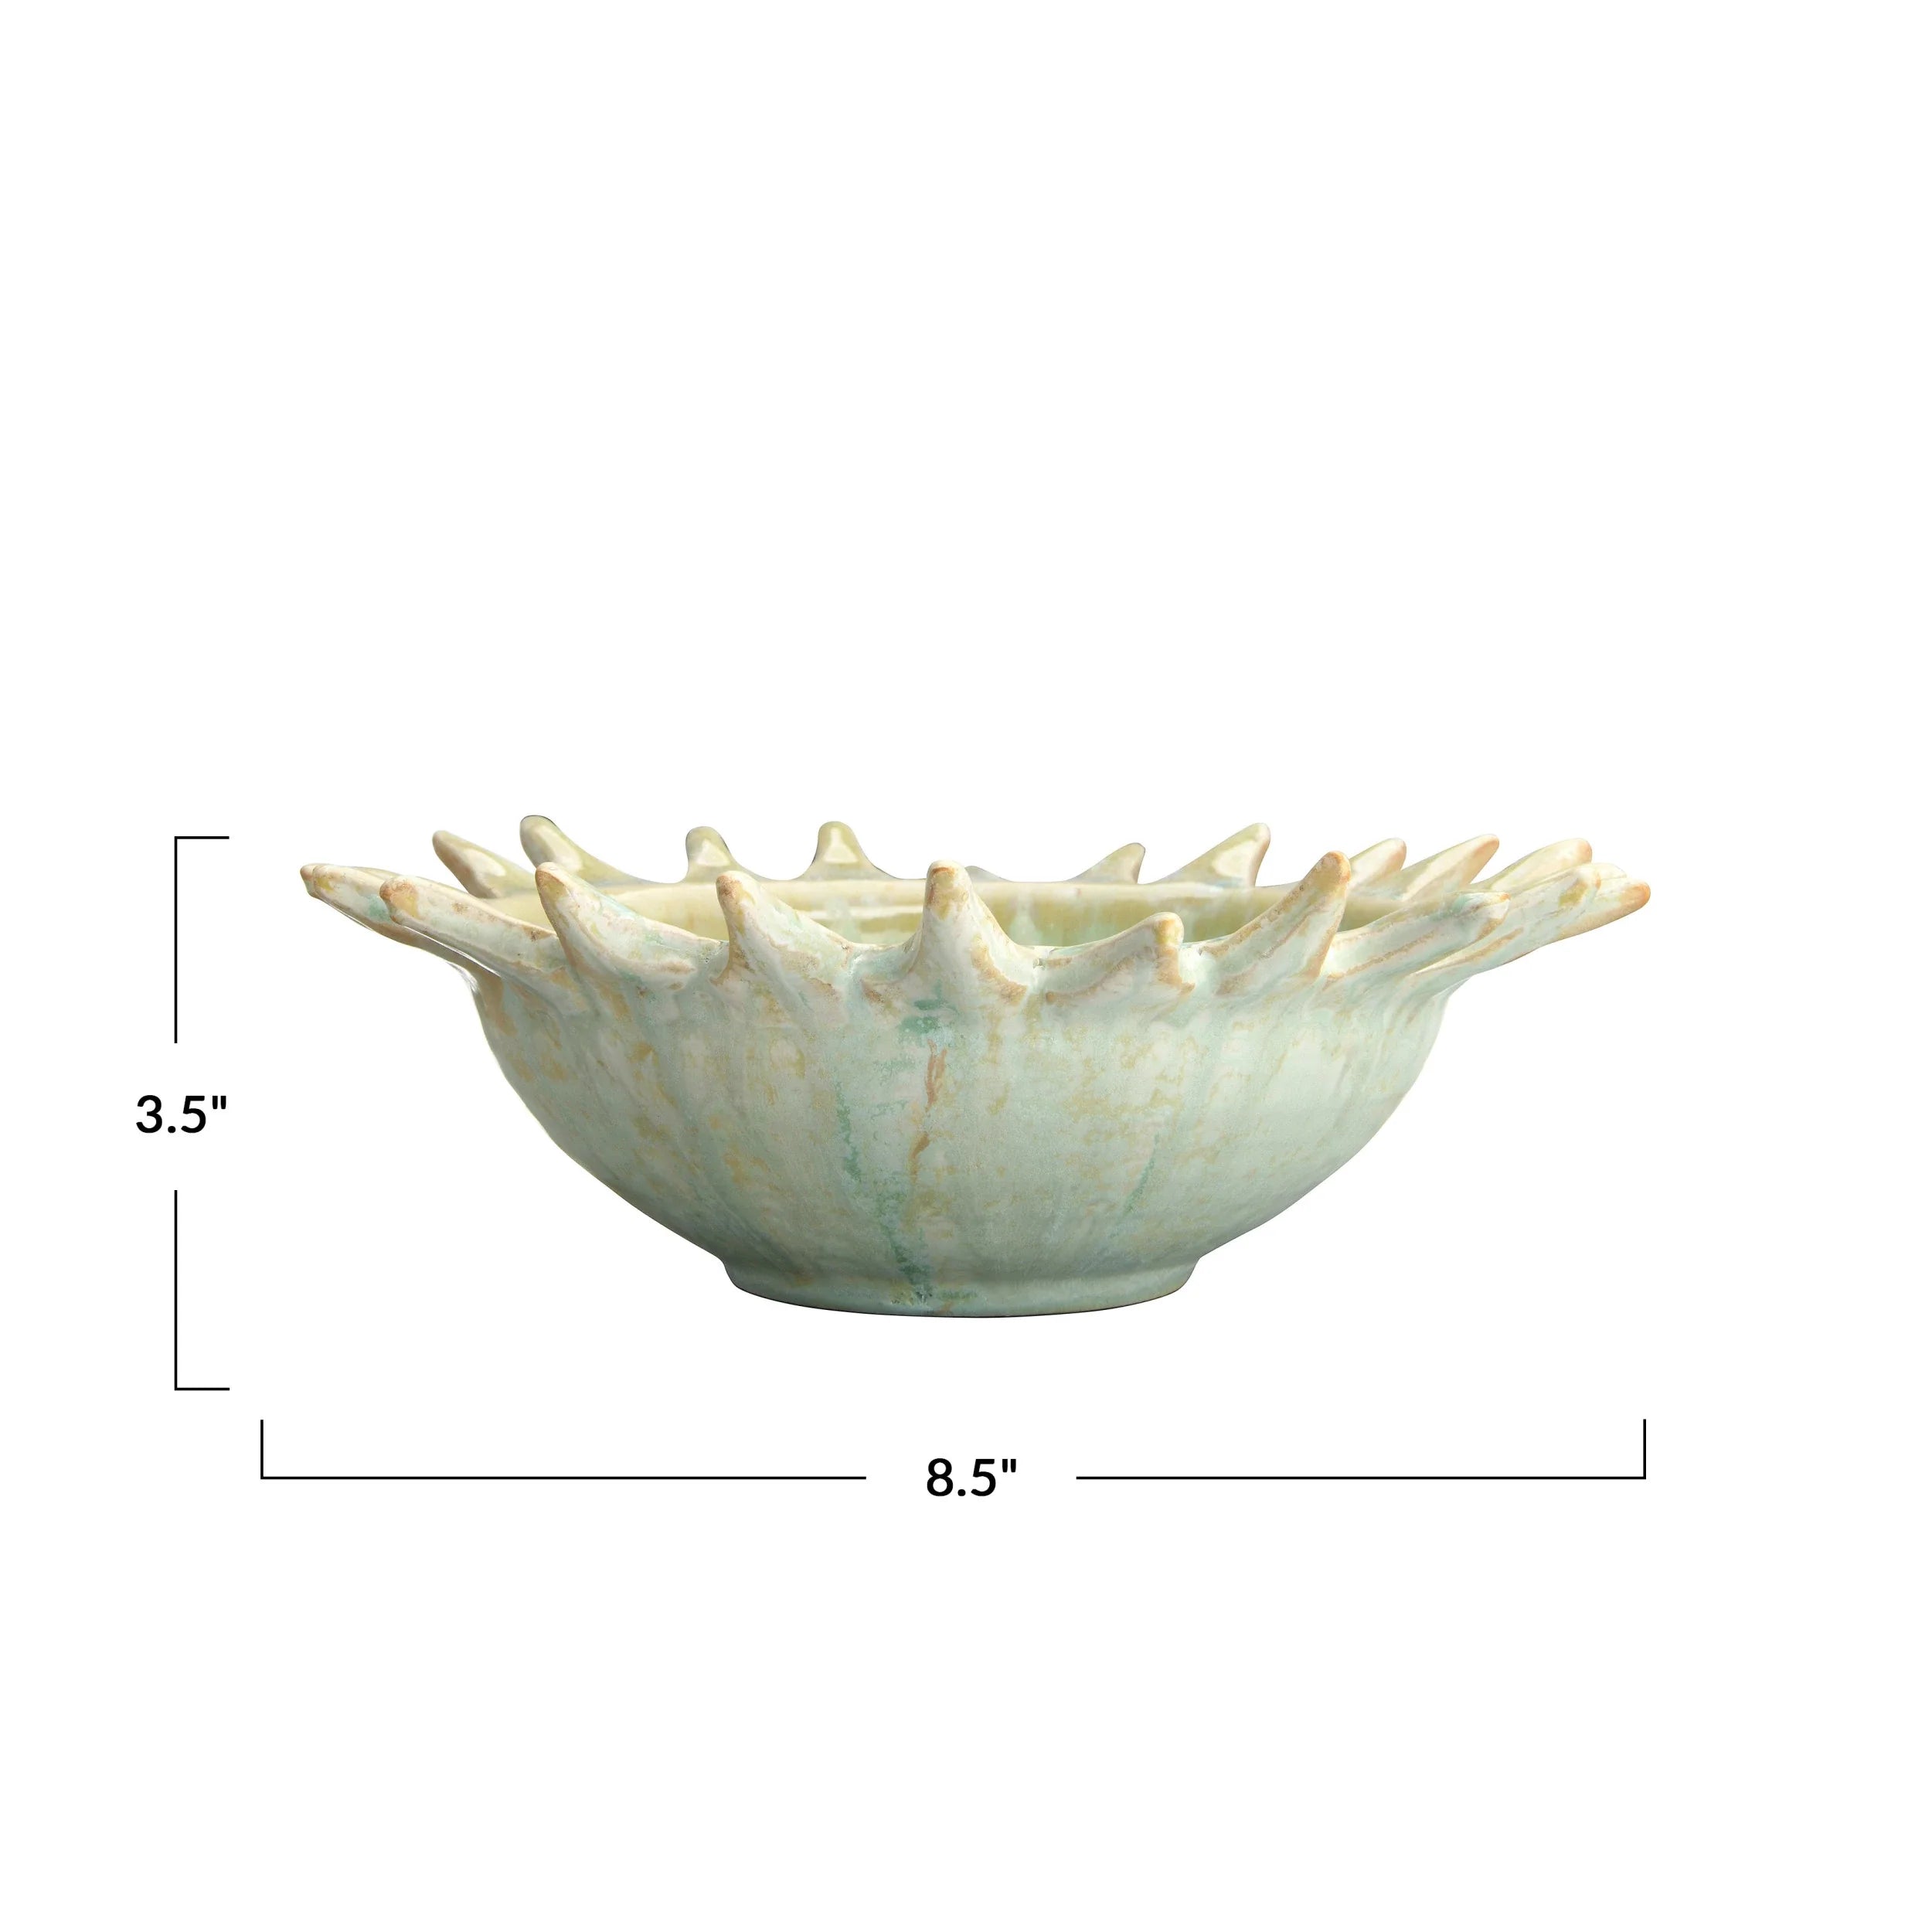 Stoneware Sunburst Shaped Serving Bowl with Glaze